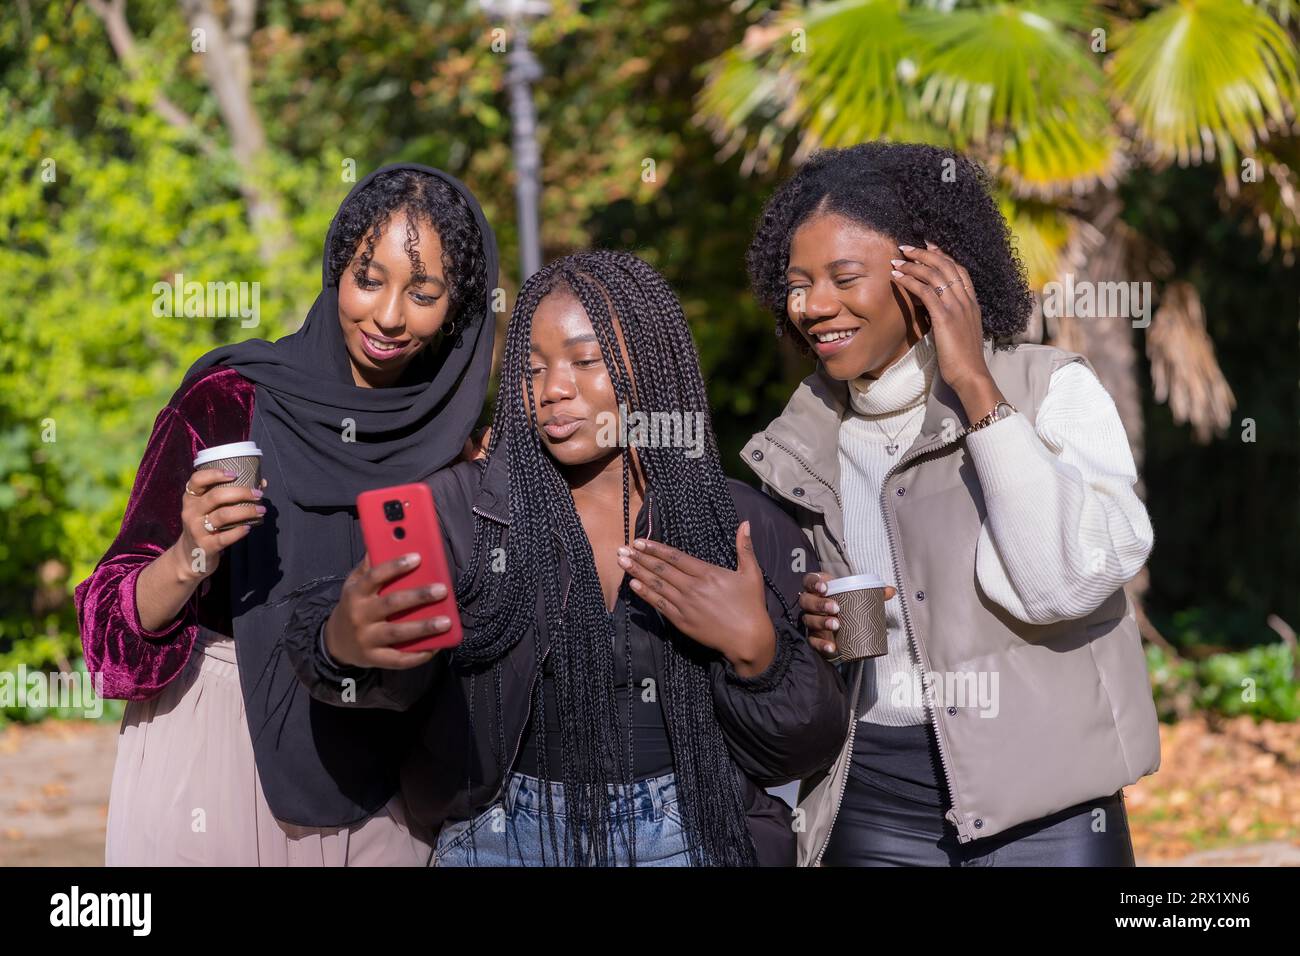 Des jeunes femmes africaines et une amie musulmane prenant un selfie dans un parc Banque D'Images